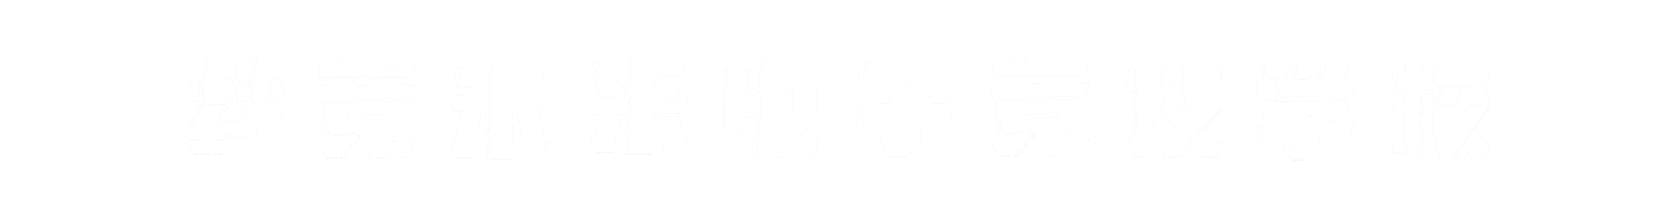 梦竞未来山西banner字